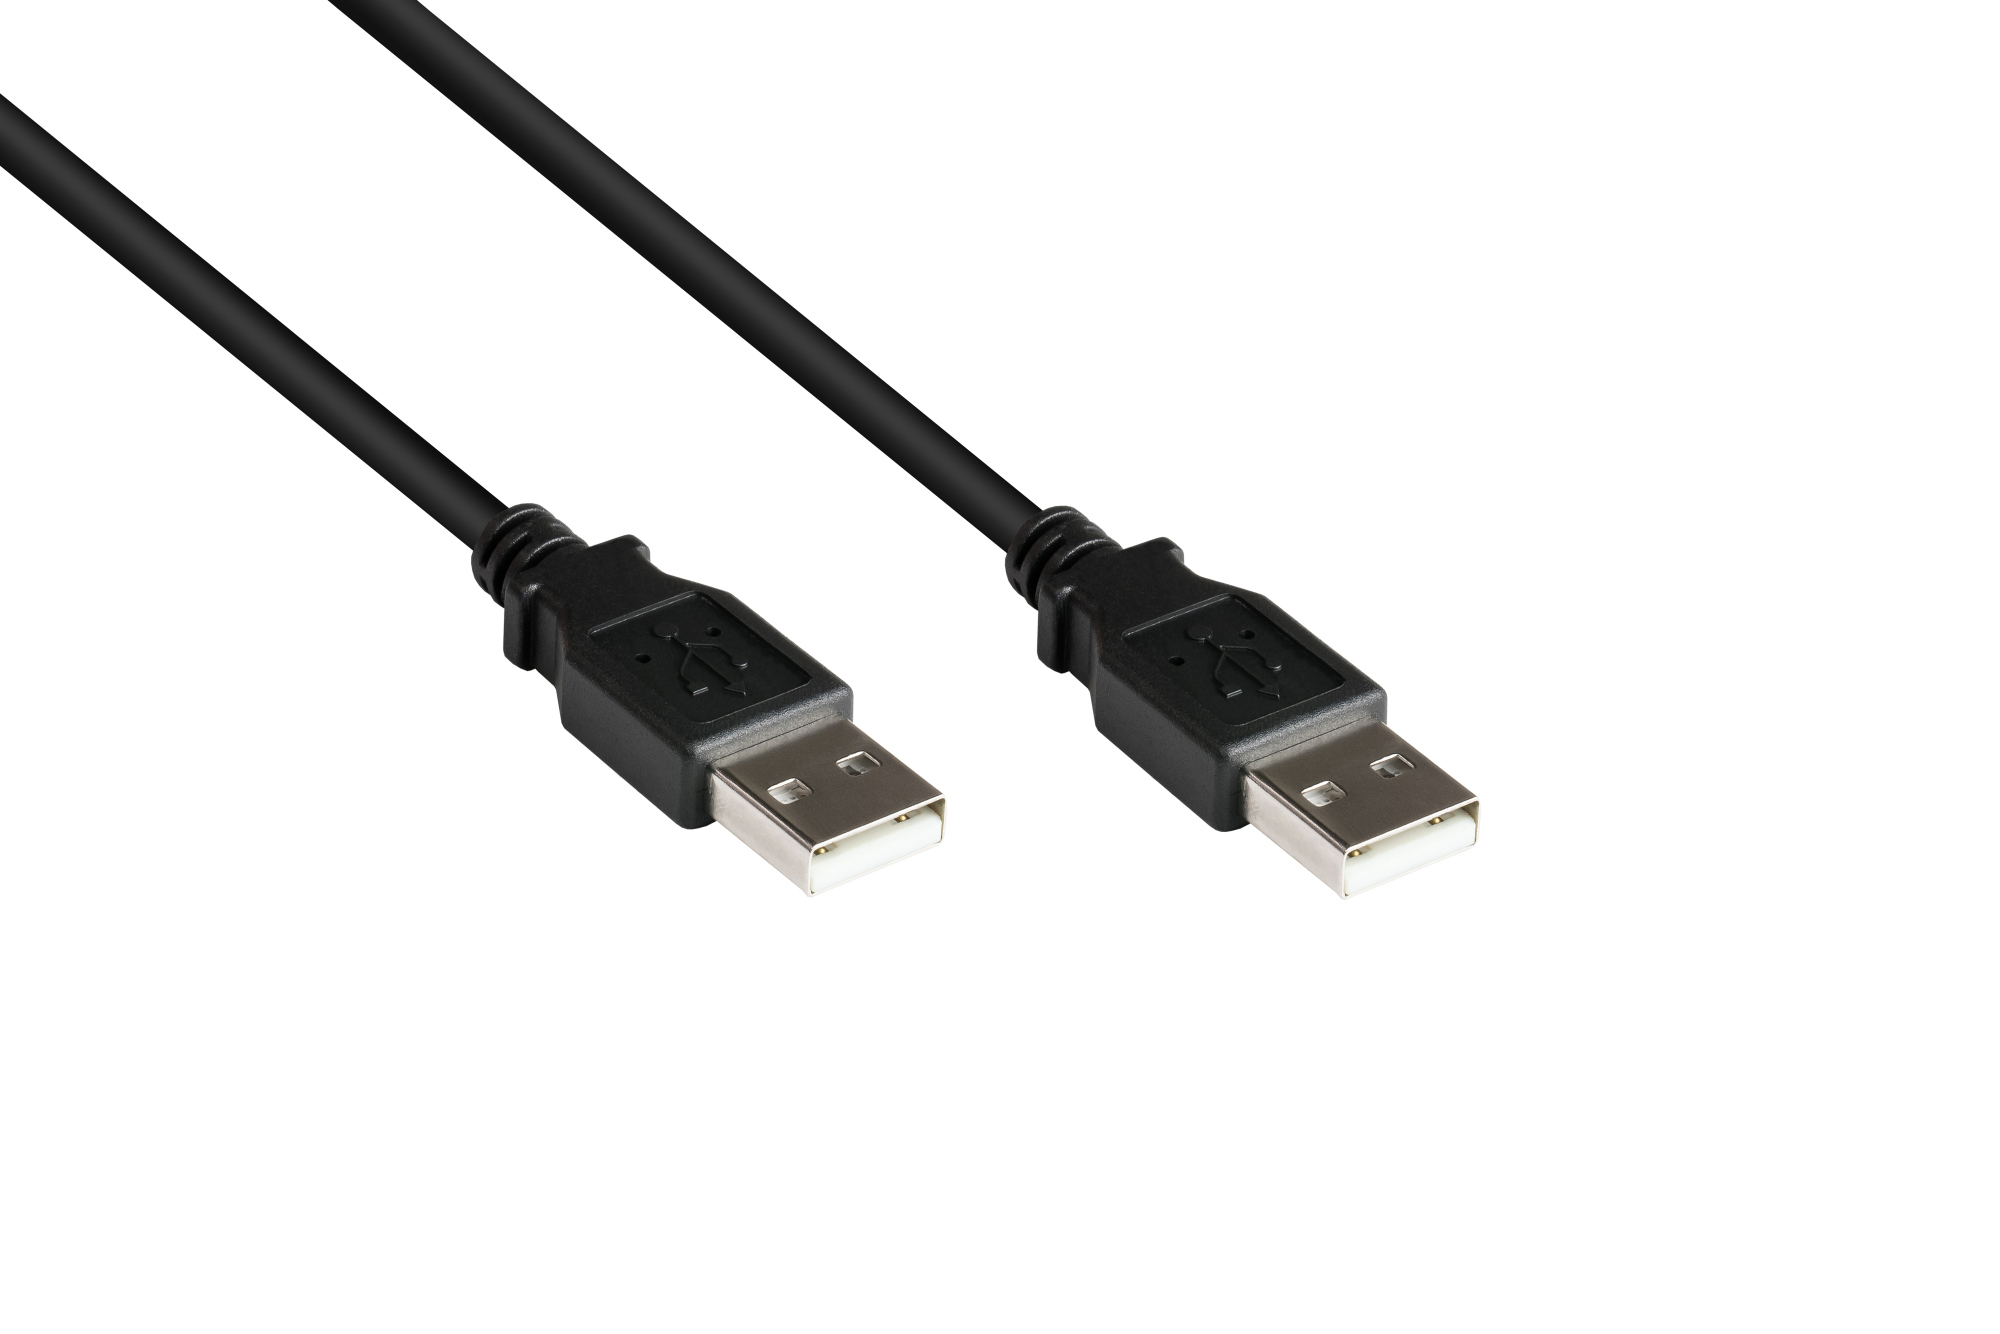 Anschlusskabel USB 2.0 Stecker A an Stecker A, schwarz, 0,5m, Good Connections®